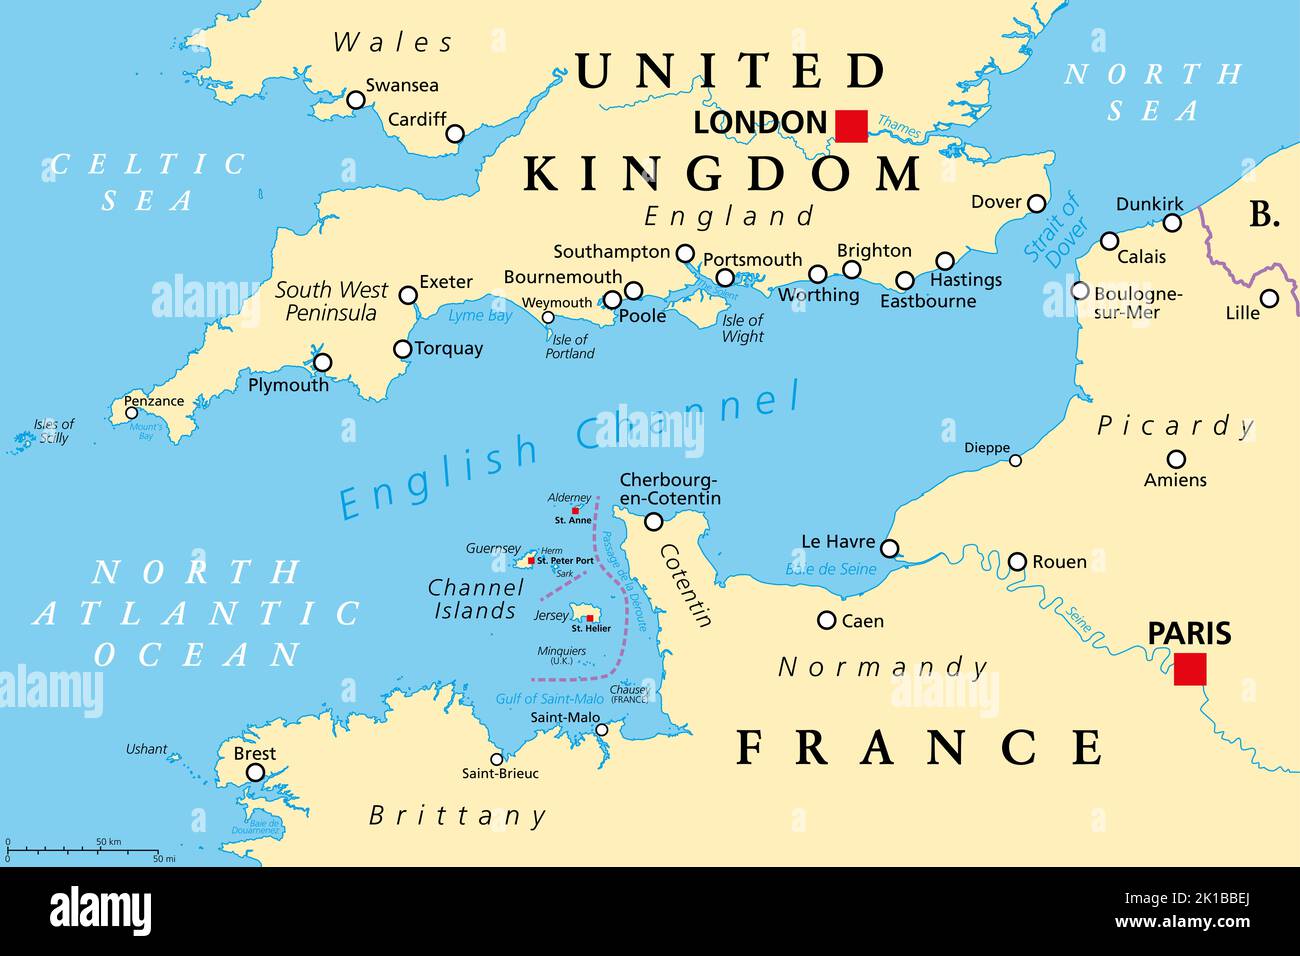 Mappa politica della Manica. Anche British Channel. Il braccio dell'Oceano Atlantico separa l'Inghilterra meridionale dalla Francia settentrionale. Foto Stock